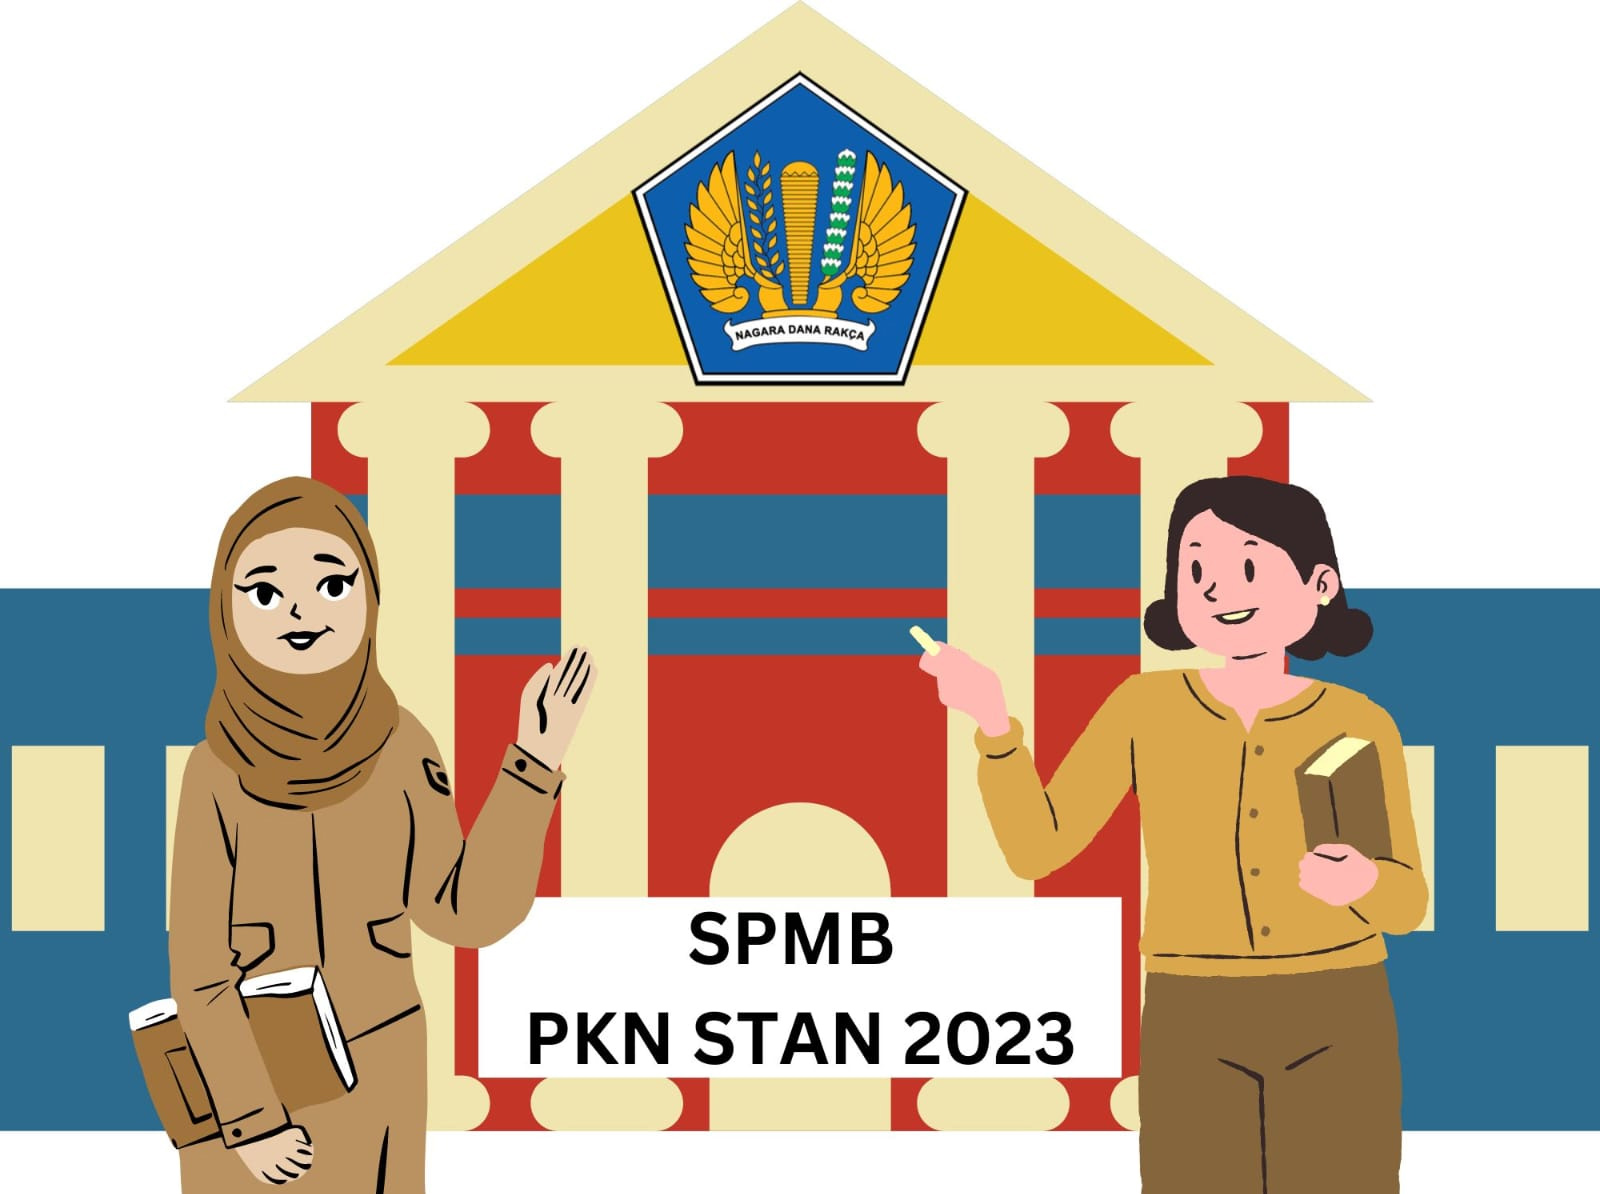 Alur Pendaftaran SPMB PKN STAN 2023, Ada 4 Tahapan Seleksi, Simak Jadwal Lengkapnya